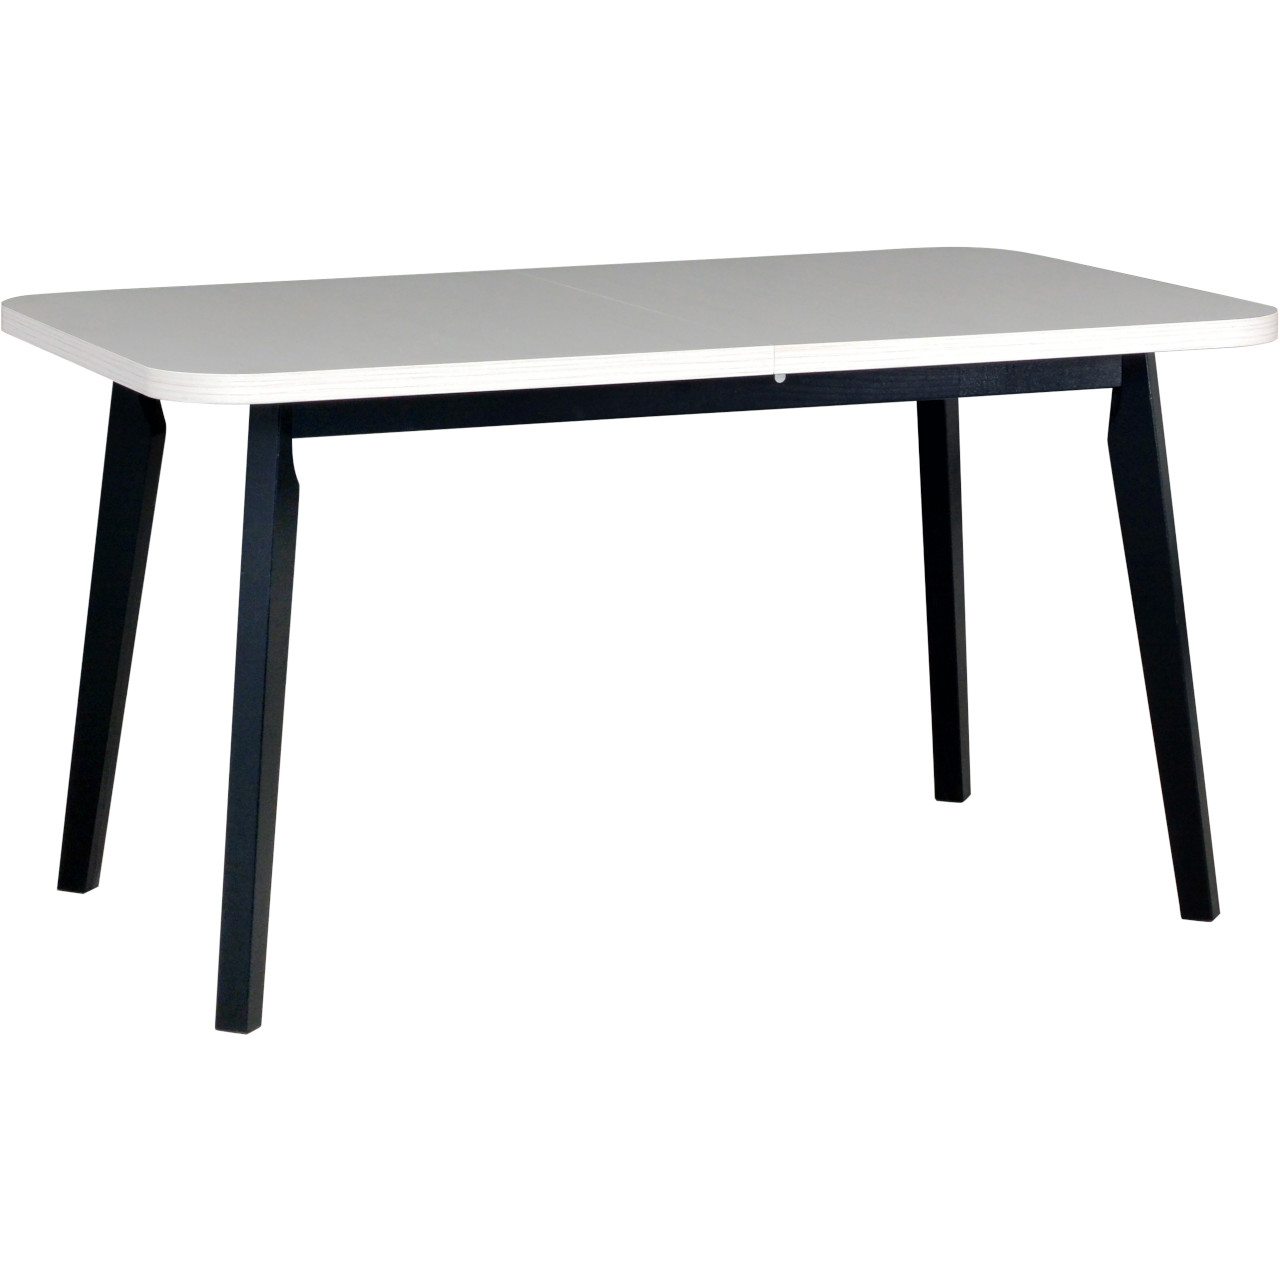 Table OSLO 6 80x140/180 white laminate / black